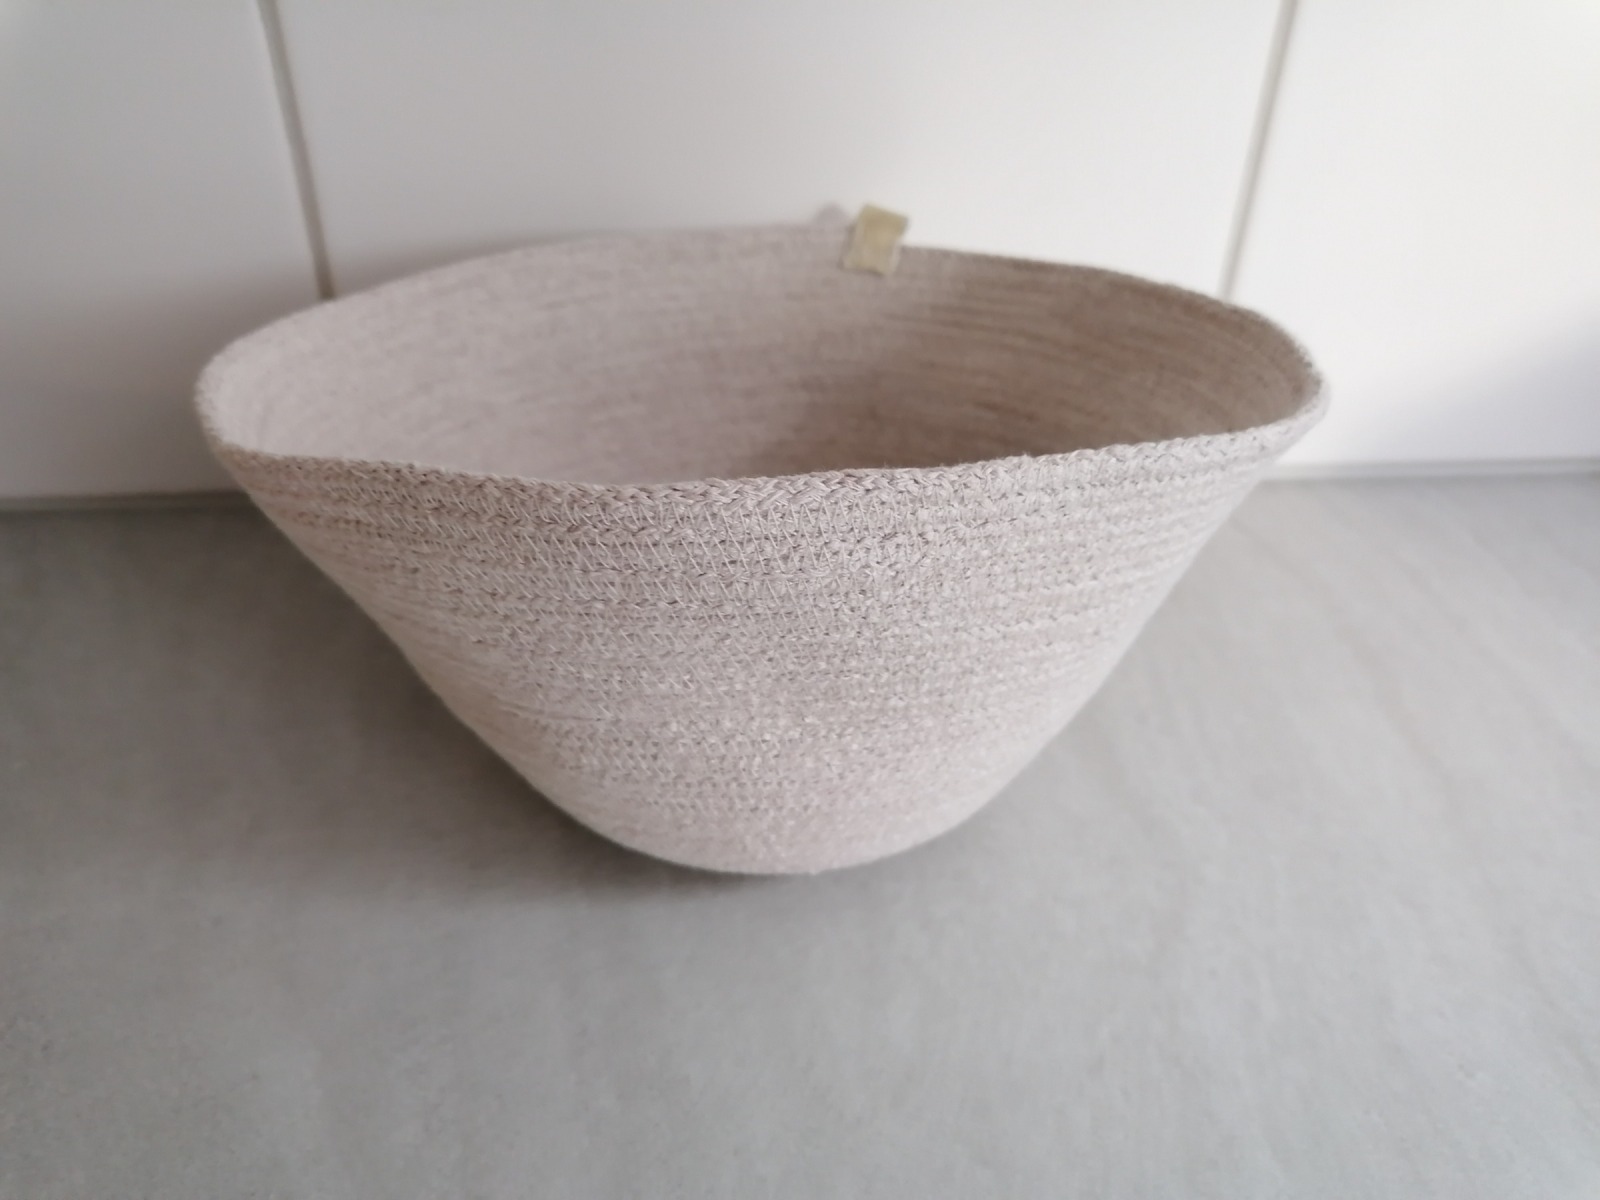 Robe Bowl creme, 20 x 11 cm